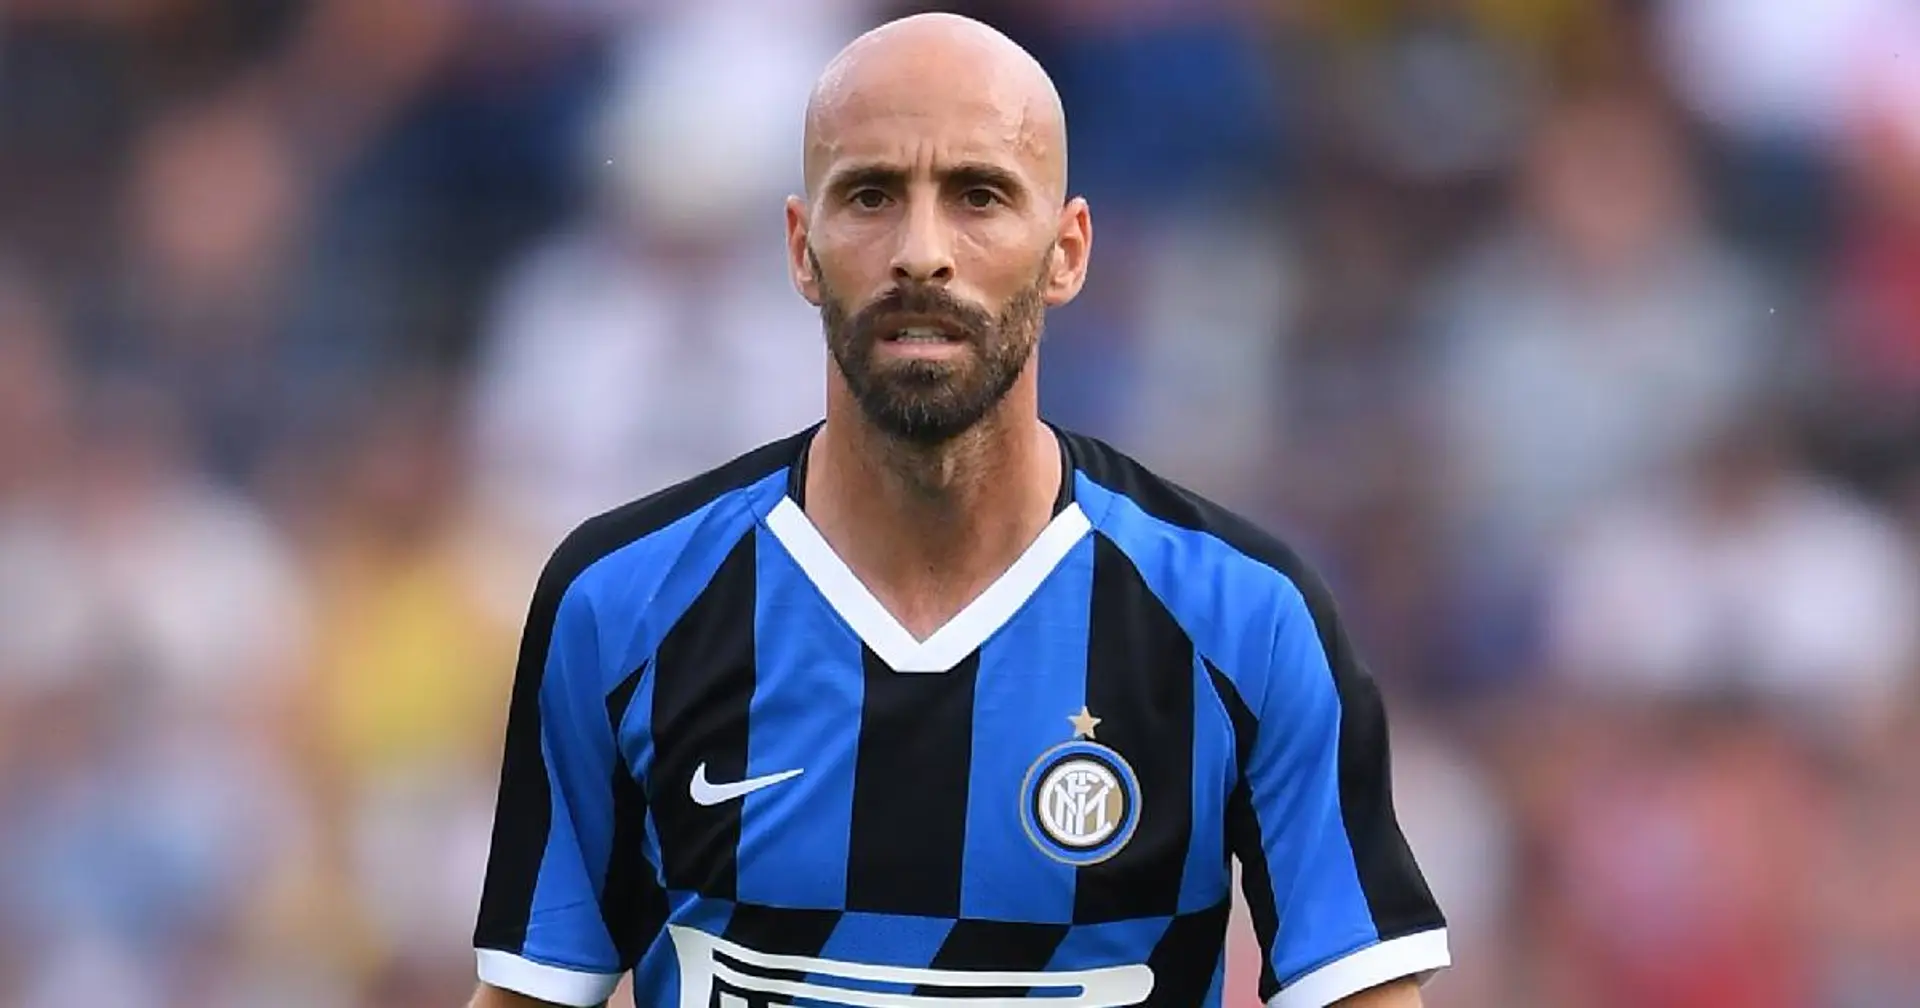 L'Inter cambia idea su Borja Valero, l'ex viola non resterà: il centrocampista ha già diverse offerte dalla Serie A